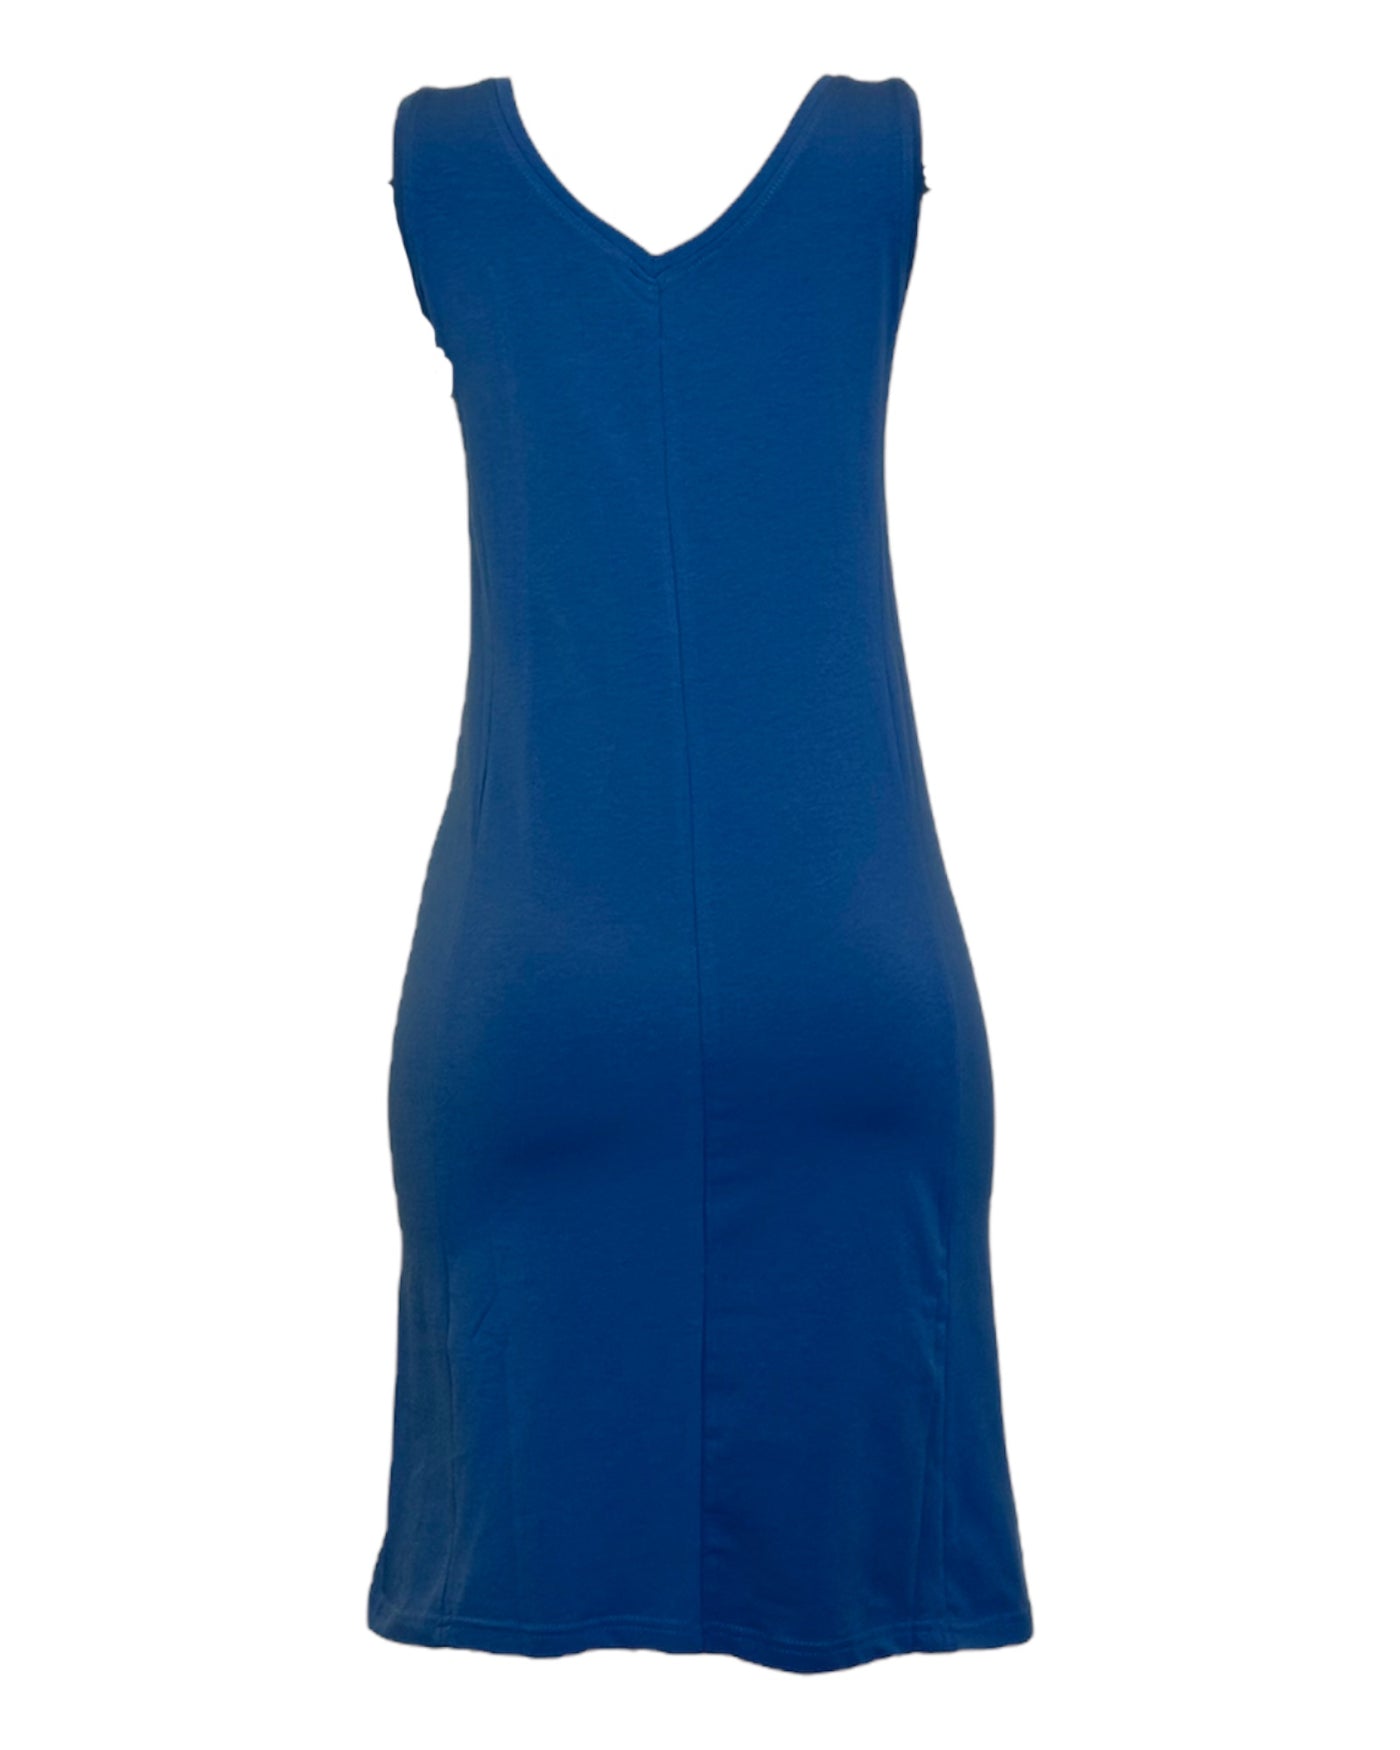 Jolie robe bleu d'été col V pour femme sans manche en coton organique